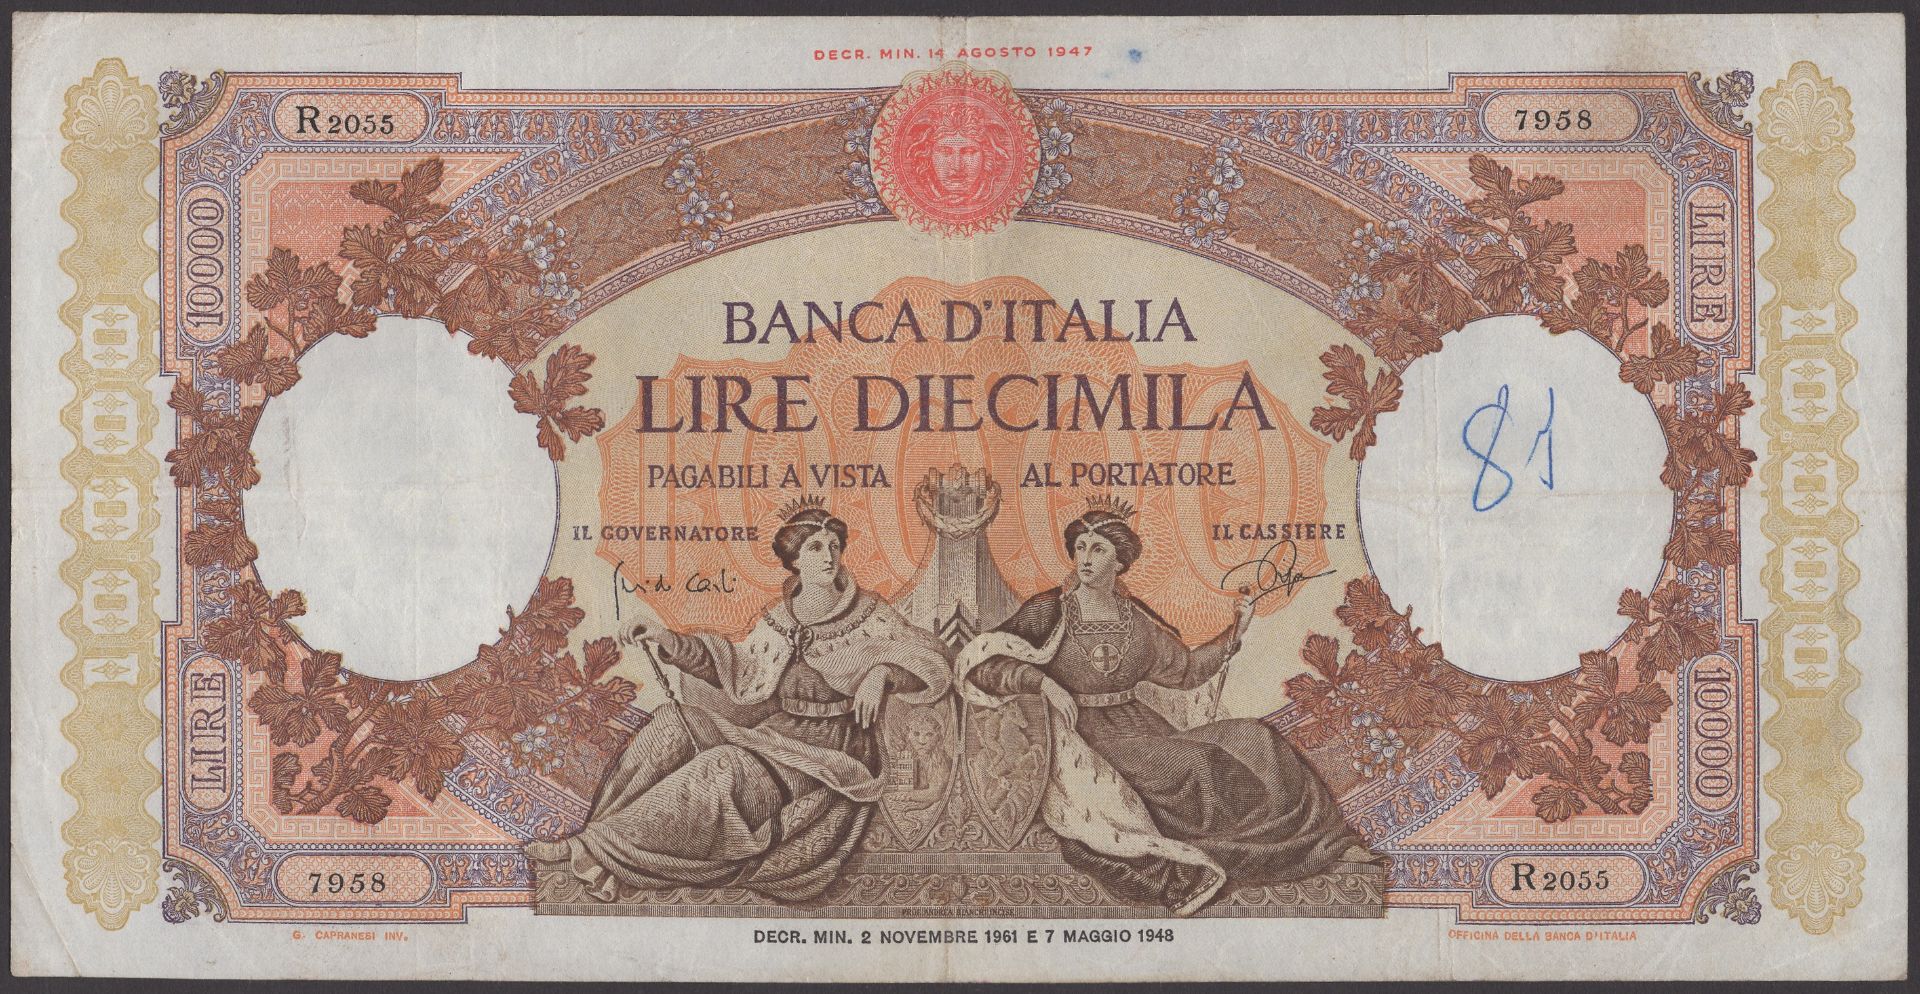 Banca d'Italia, 10,000 Lire, 2 January 1961, serial number R 2055 7958, Carli-Ripa signature...